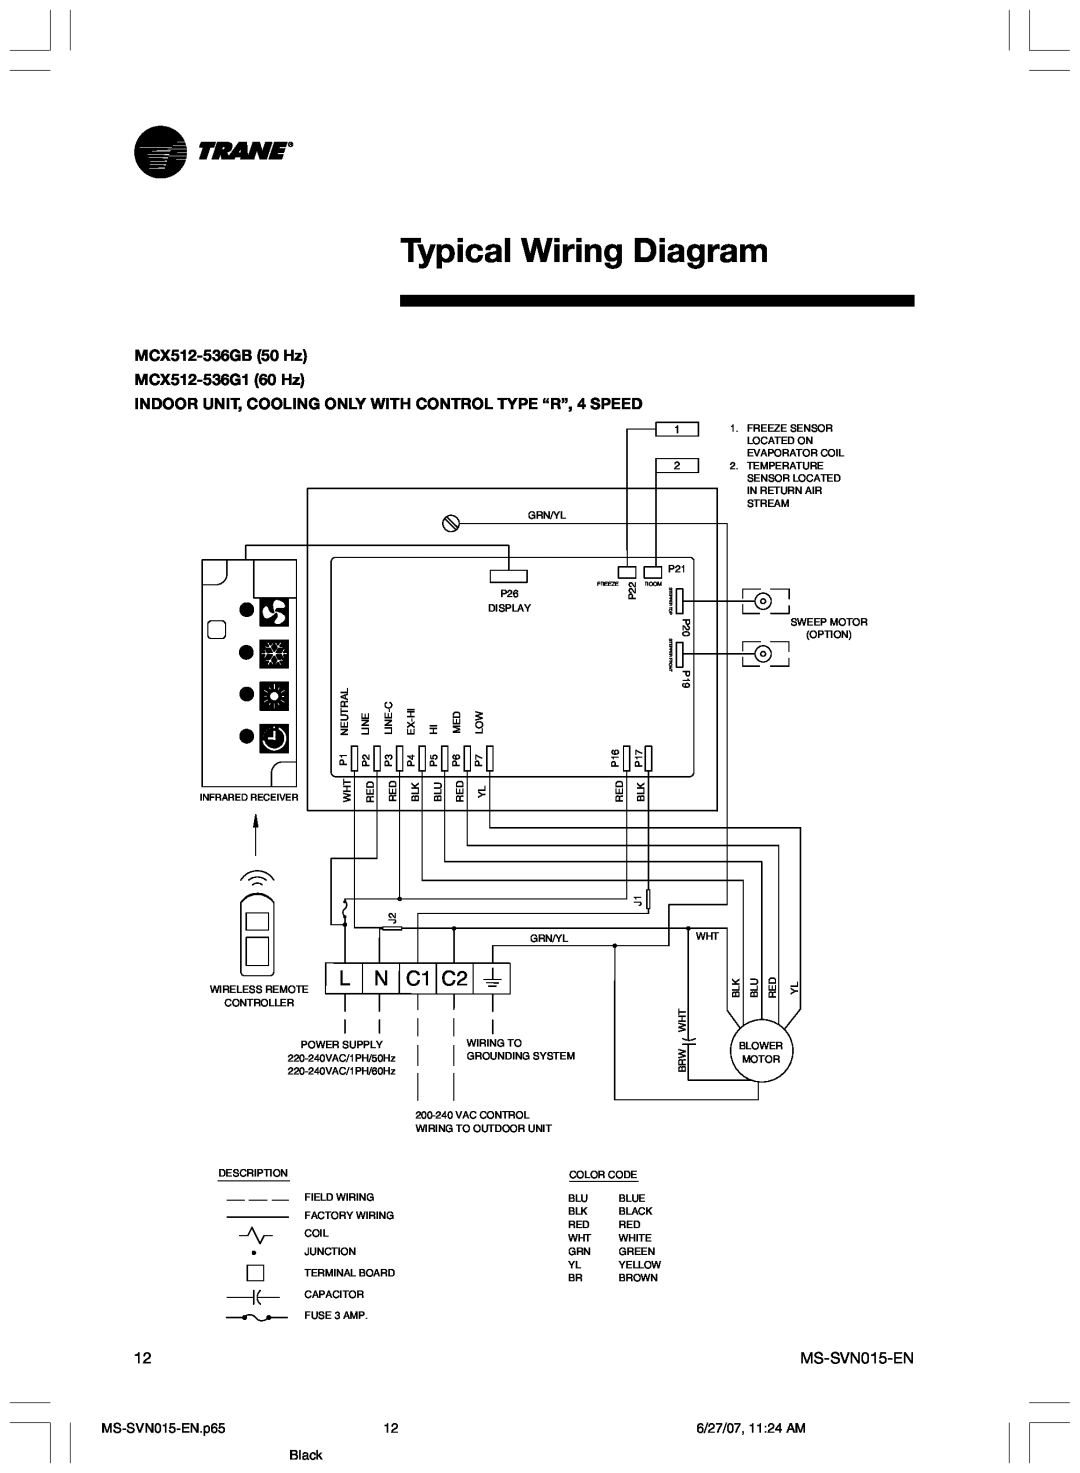 Trane Typical Wiring Diagram, C1 C2, MCX512-536GB50 Hz MCX512-536G160 Hz, MS-SVN015-EN.p65, 6/27/07, 11 24 AM, Black 